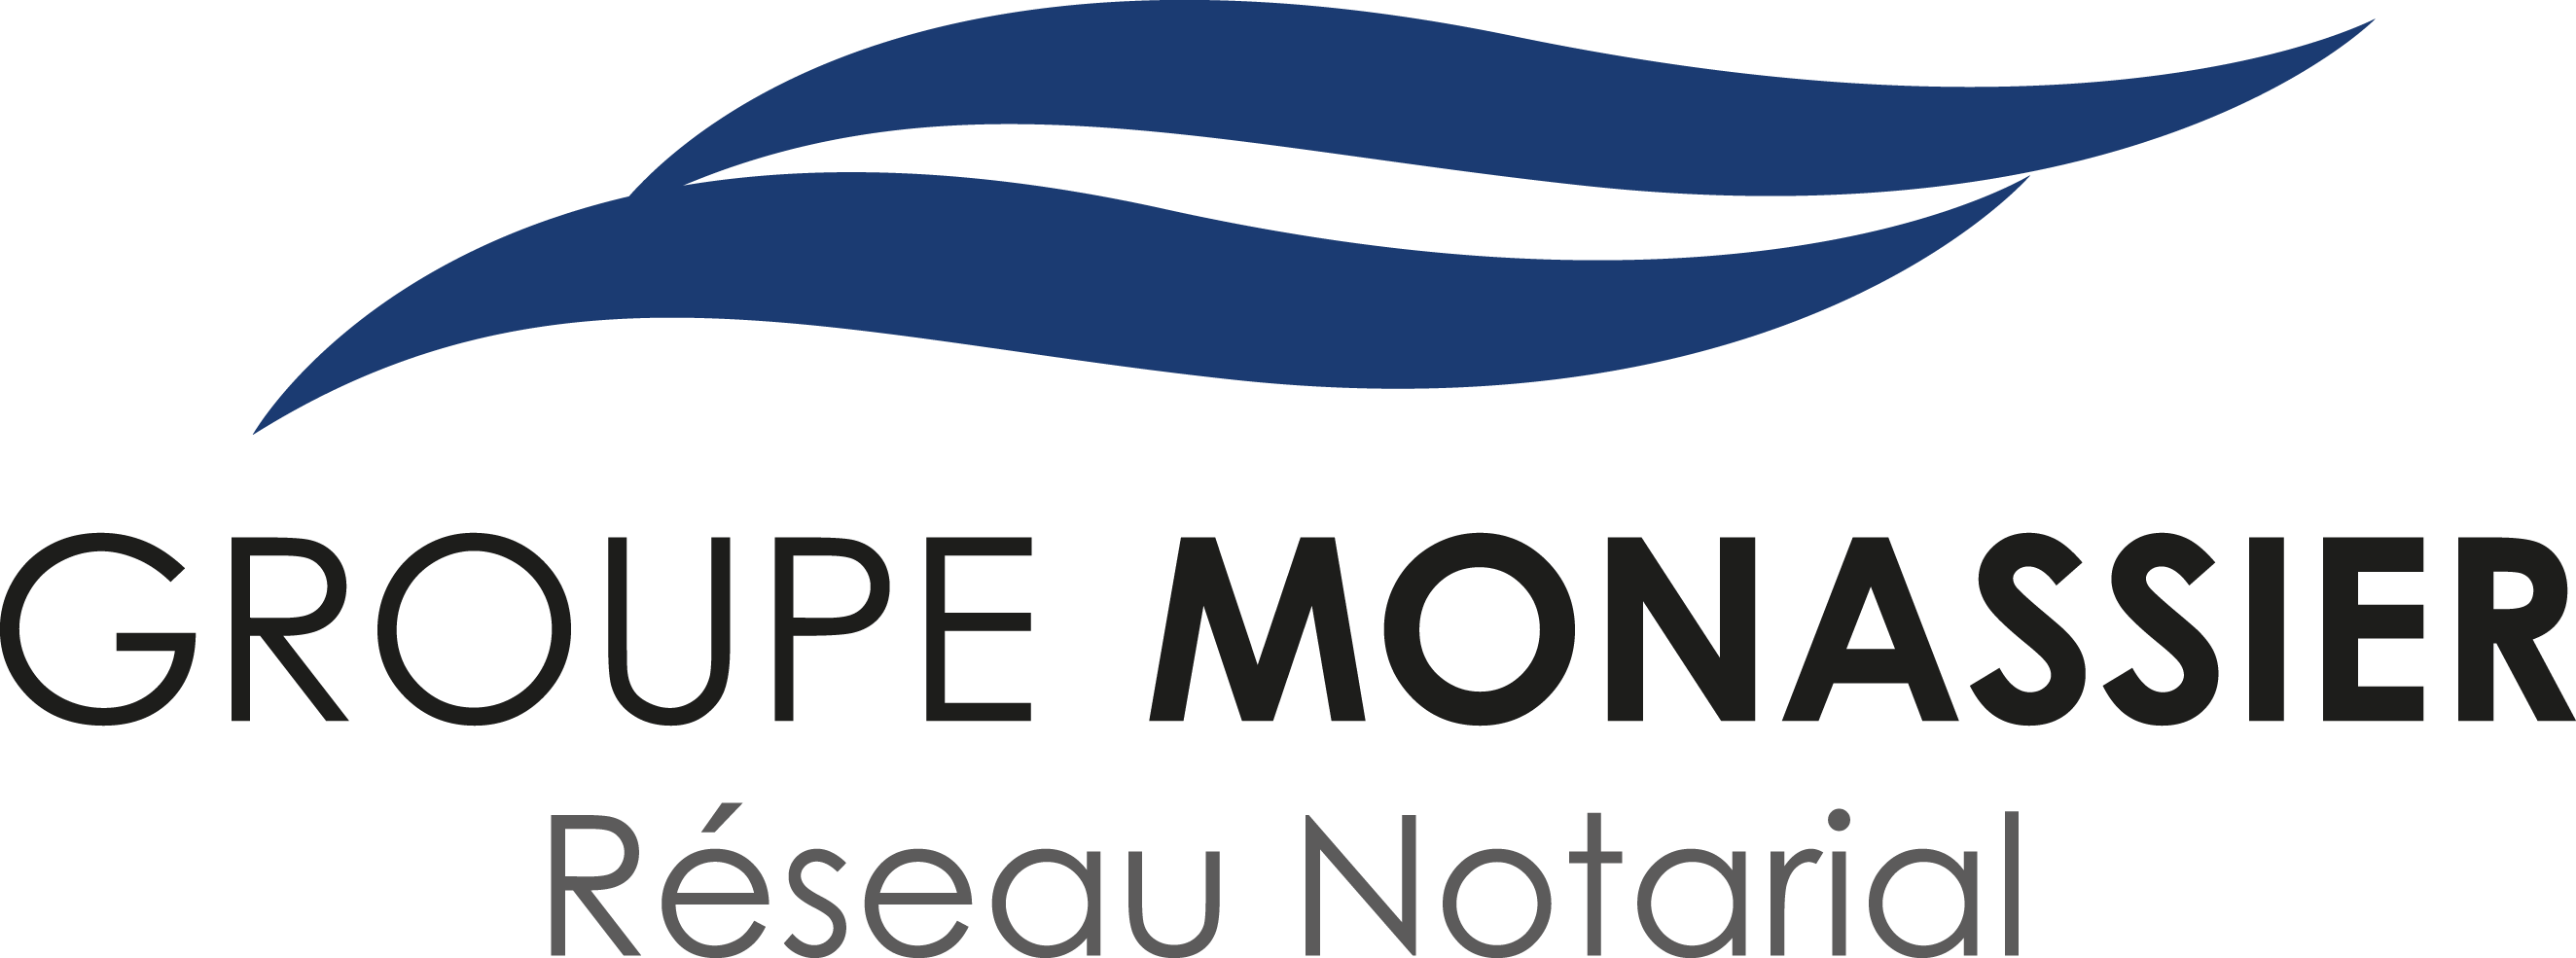 Groupe Monassier Ouest Atlantique, NOTAIRES à NANTES et TREILLIERES